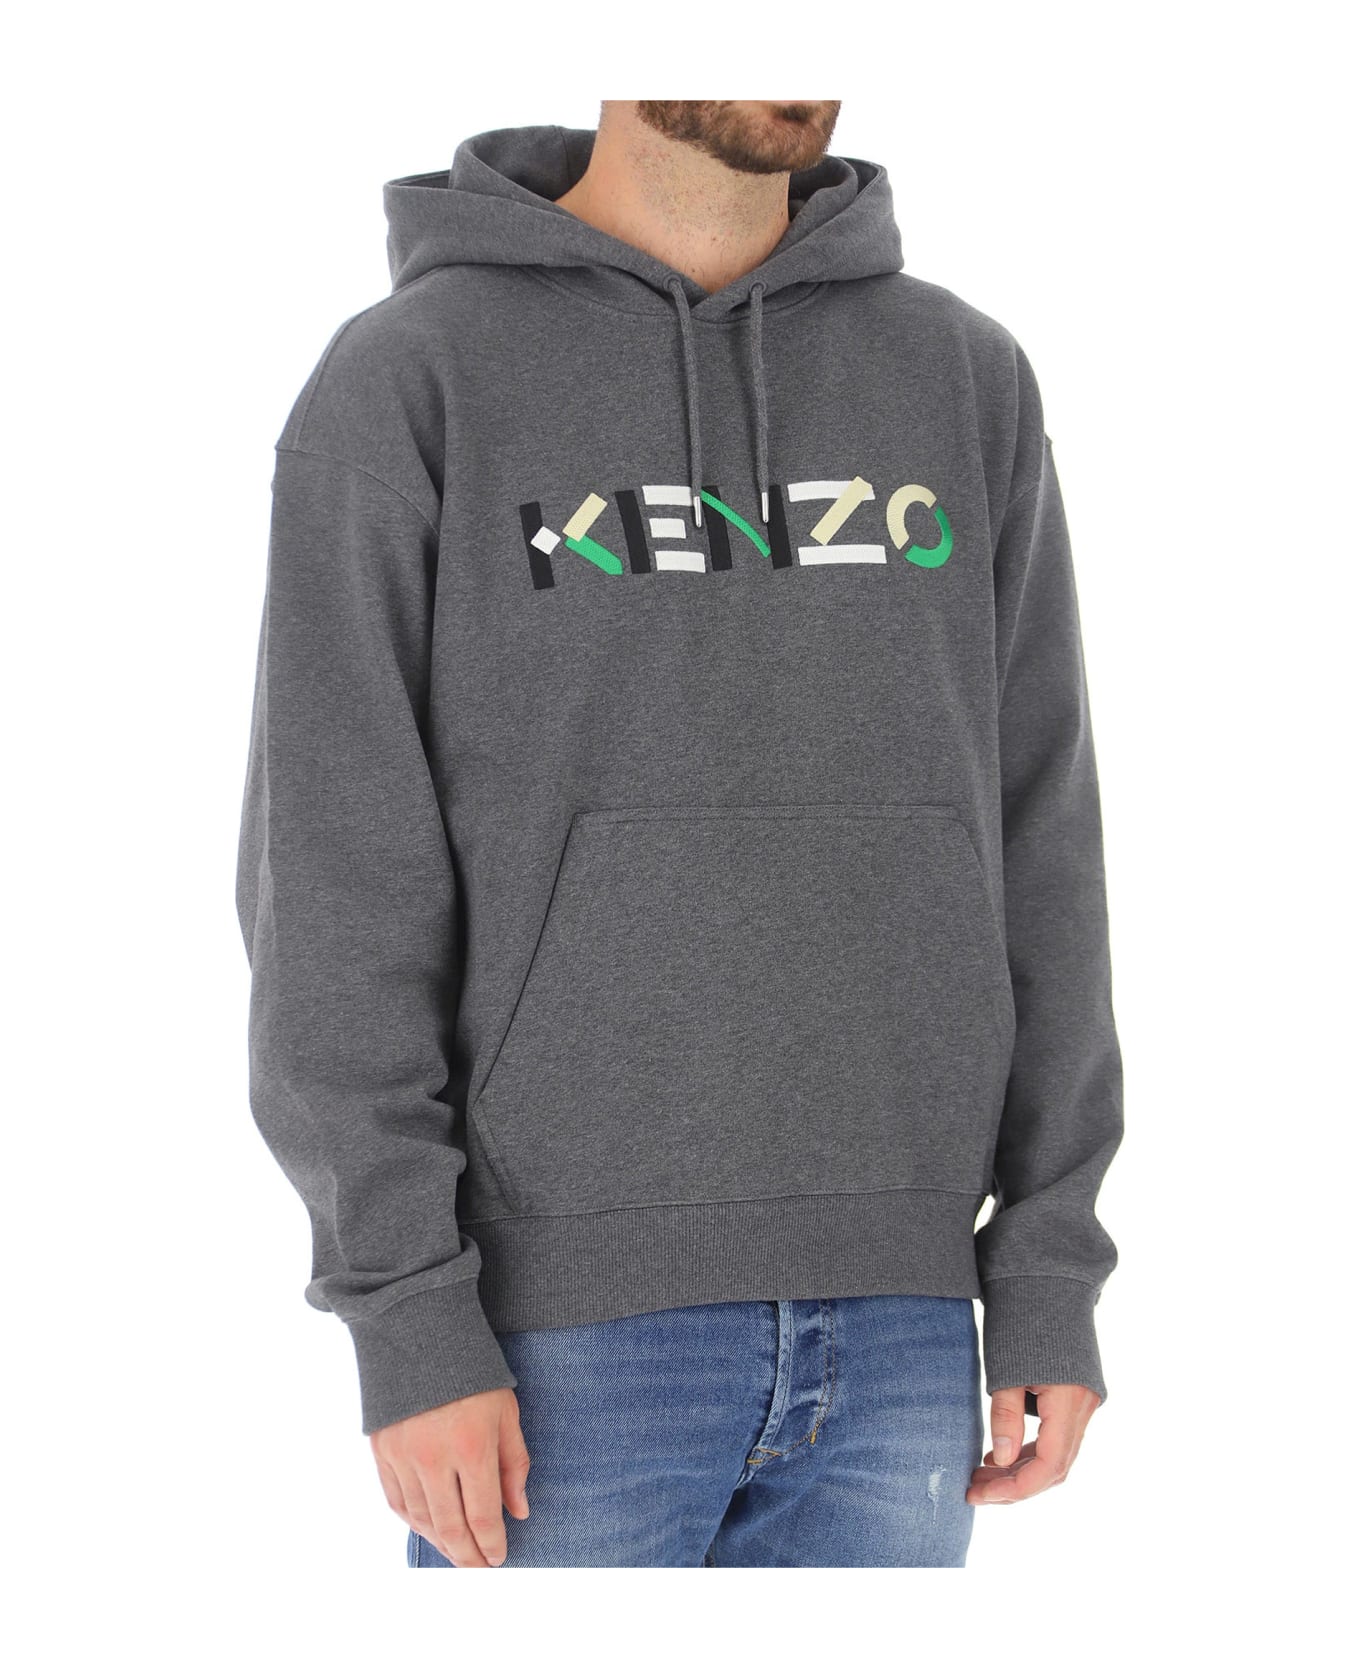 Kenzo Logo Hooded Sweatshirt - Gray